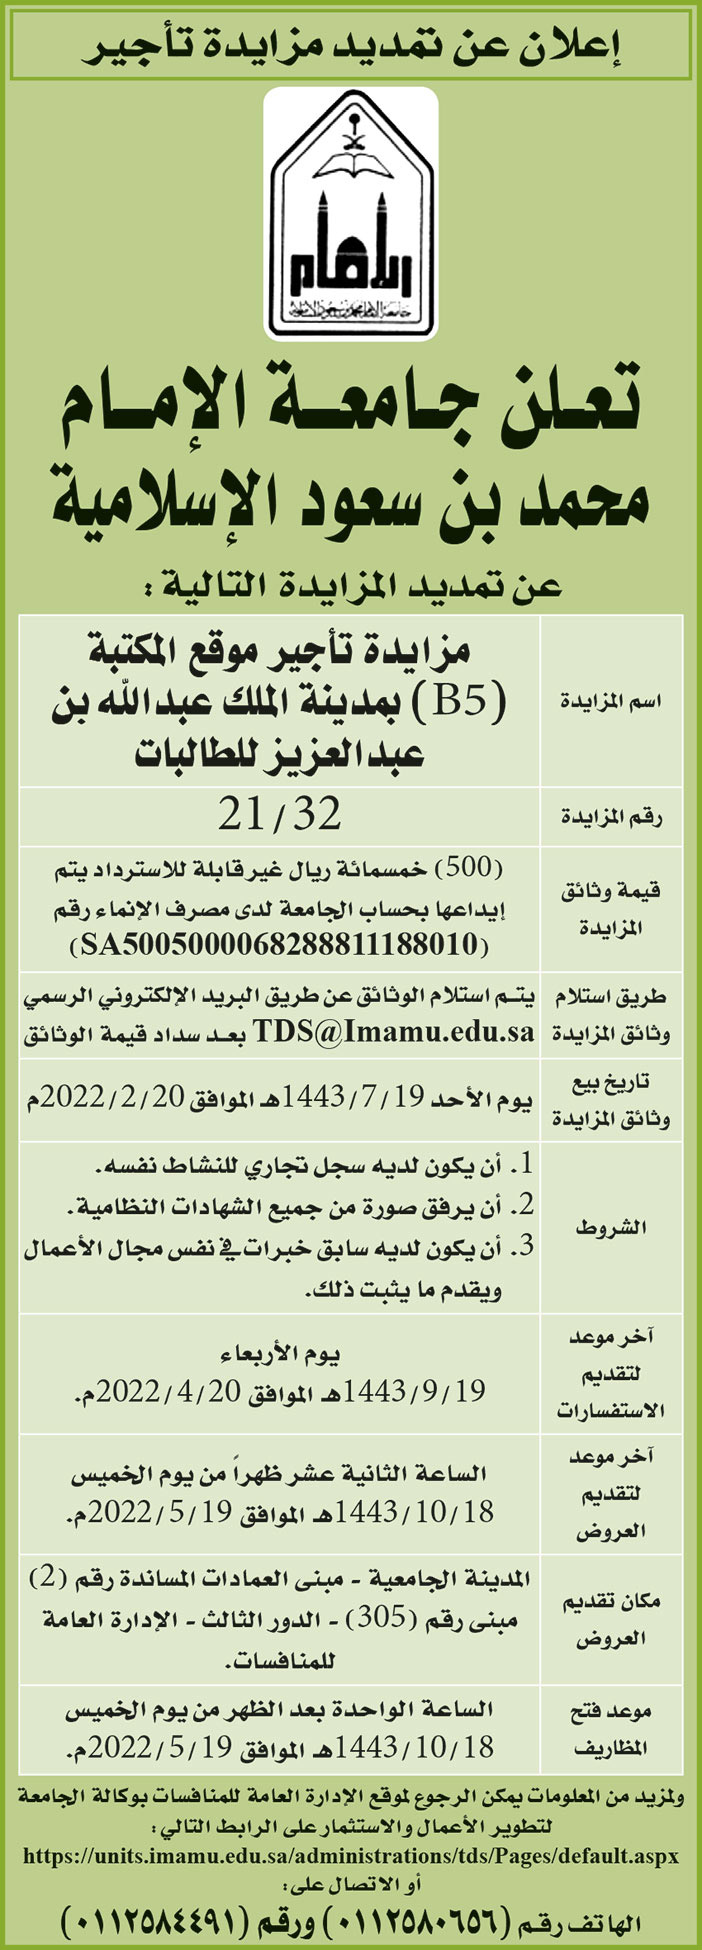 جامعة الإمام محمد بن سعود الإسلامية تمدد مزايدة تأجير موقع المكتبة (B5) بمدينة الملك عبدالله بن عبدالعزيز للطالبات 